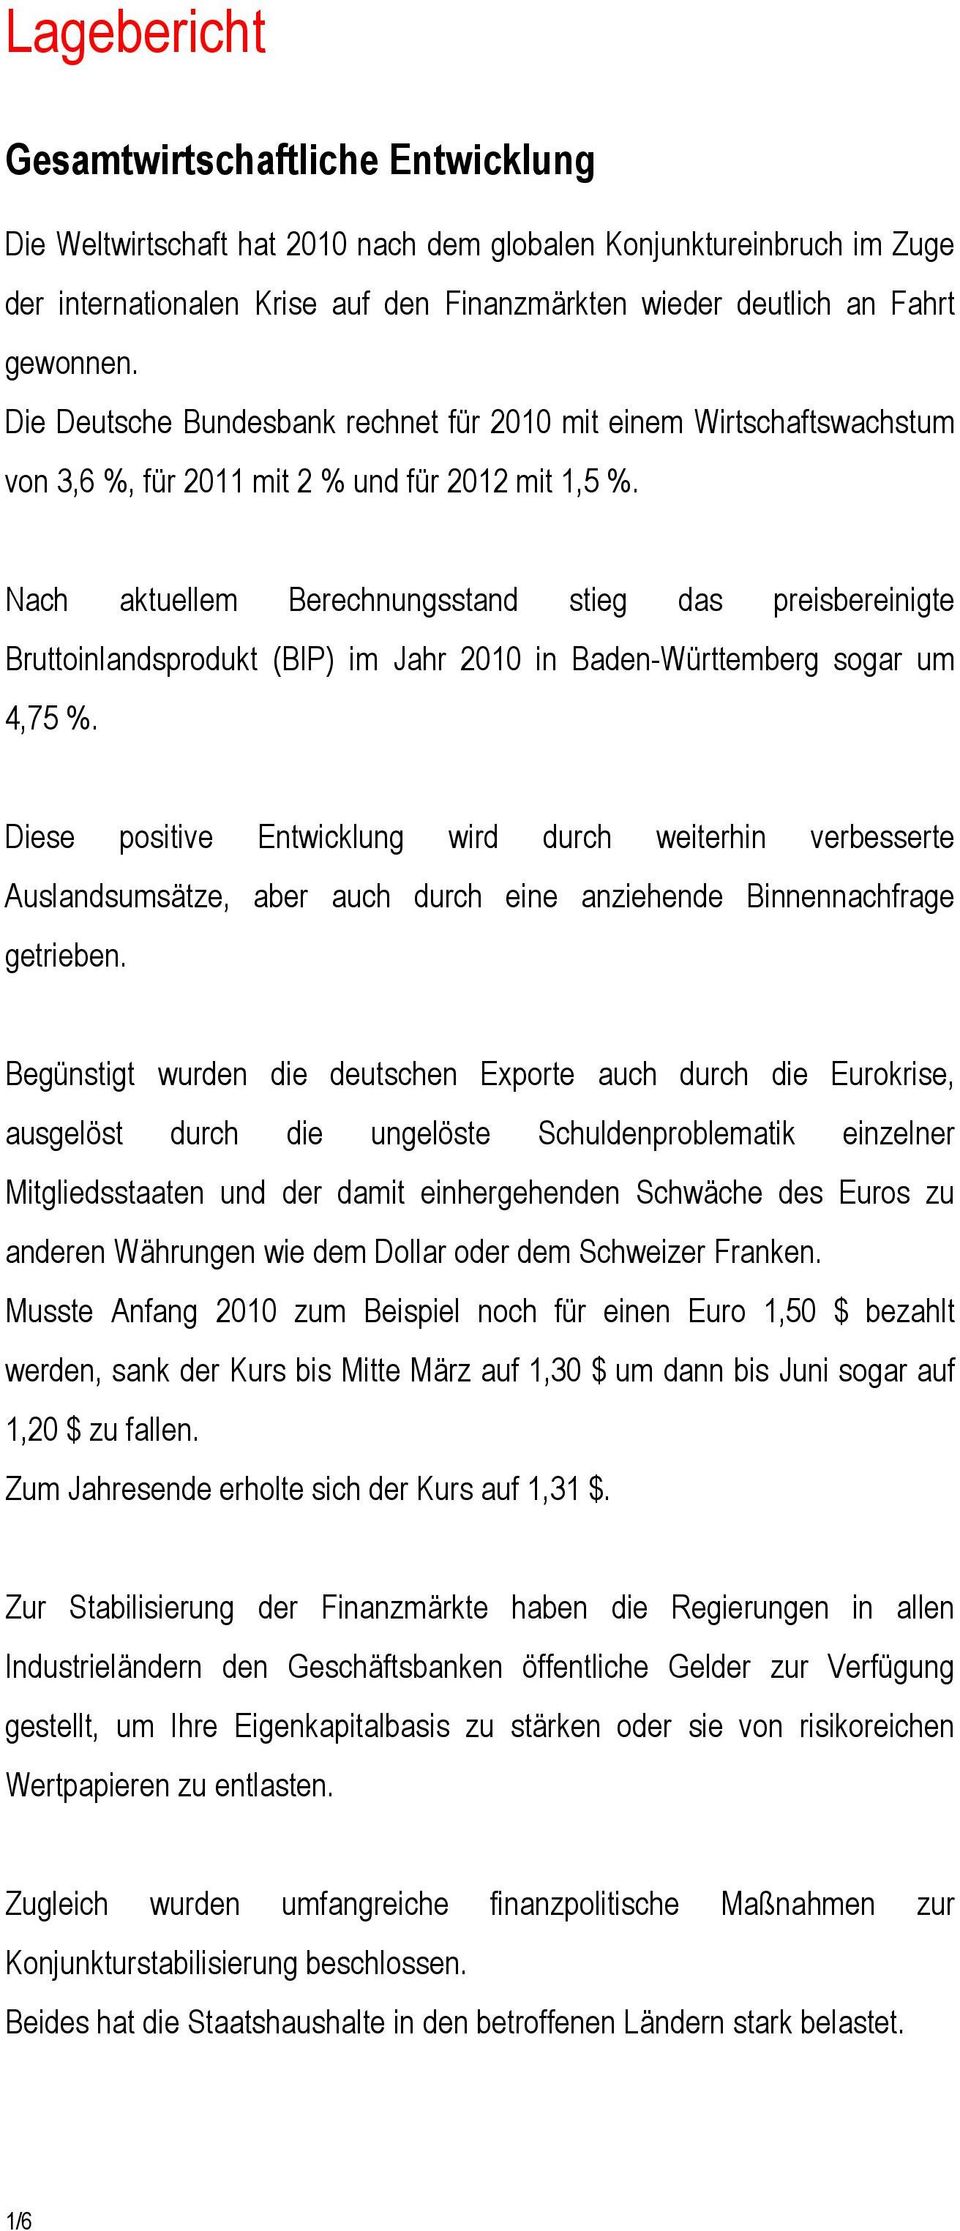 Nach aktuellem Berechnungsstand stieg das preisbereinigte Bruttoinlandsprodukt (BIP) im Jahr 2010 in Baden-Württemberg sogar um 4,75 %.